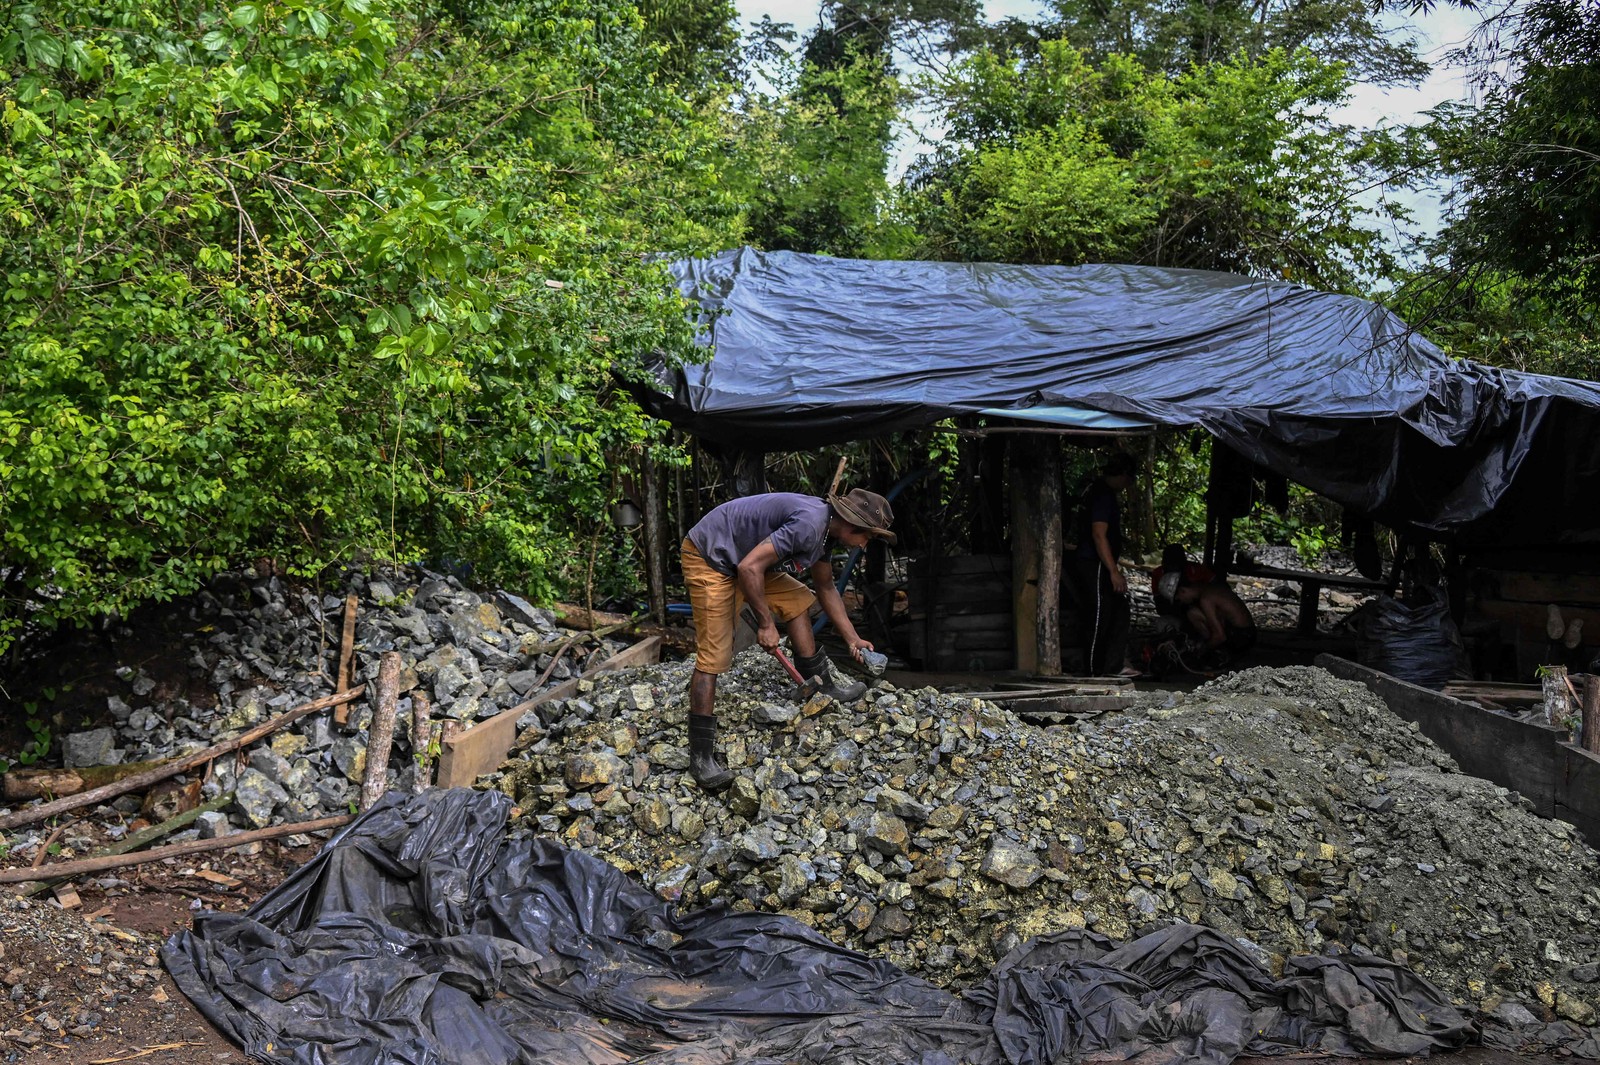 Mineradores trabalham em condições precárias nas minas ilegais. — Foto: Nelson Almeida / AFP